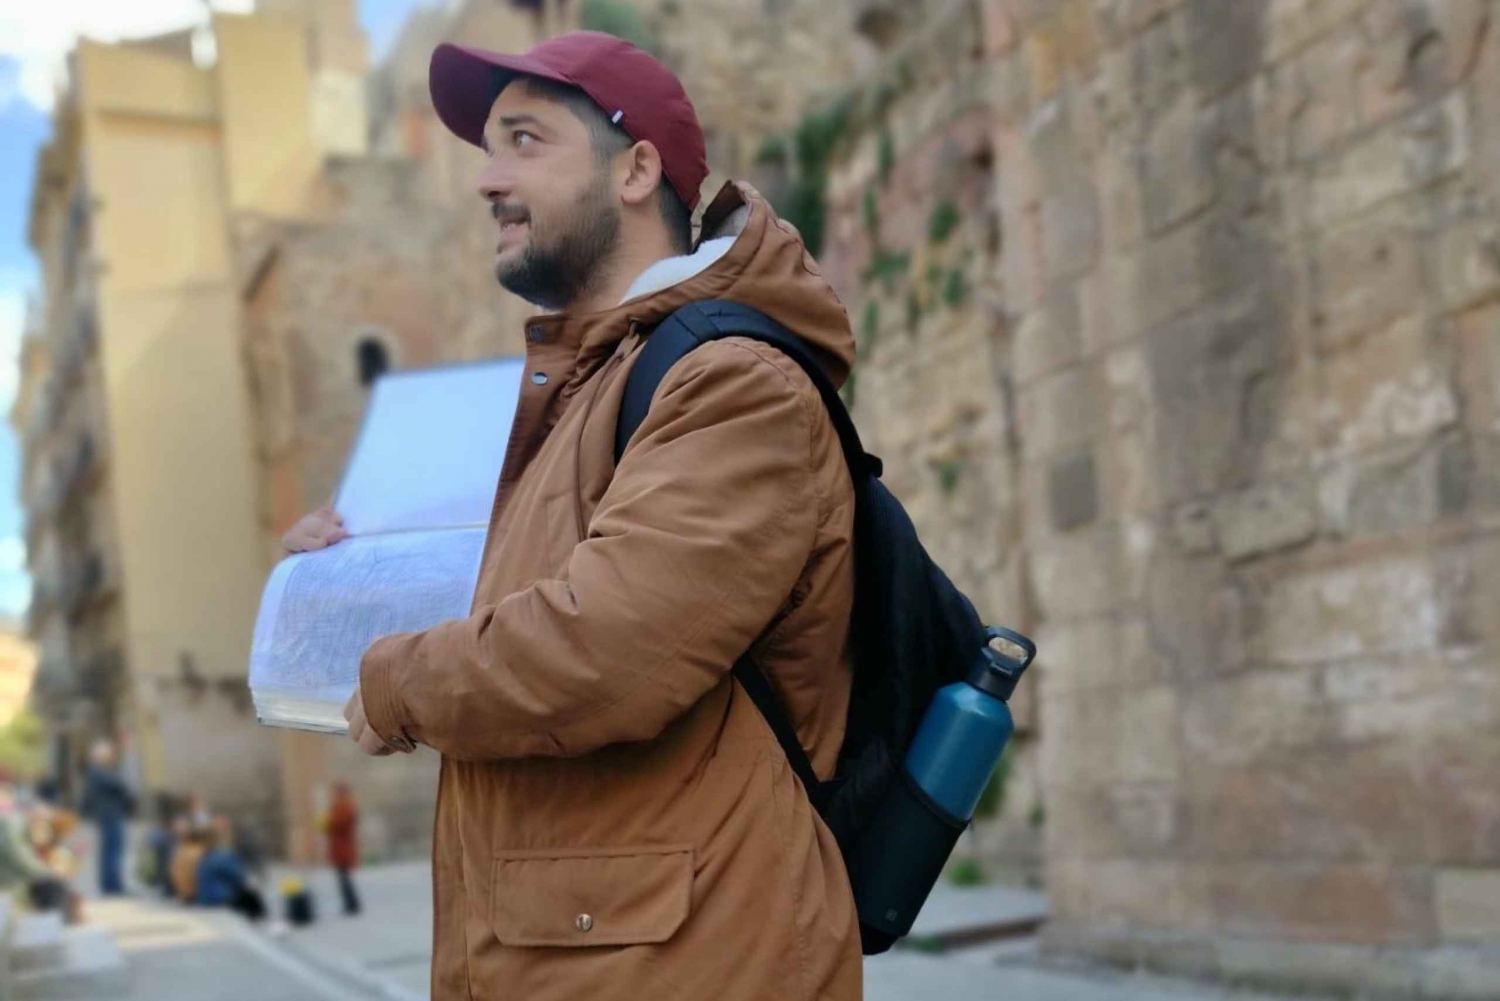 MNK Tours: Reiseführer in Barcelona auf Italienisch und Spanisch